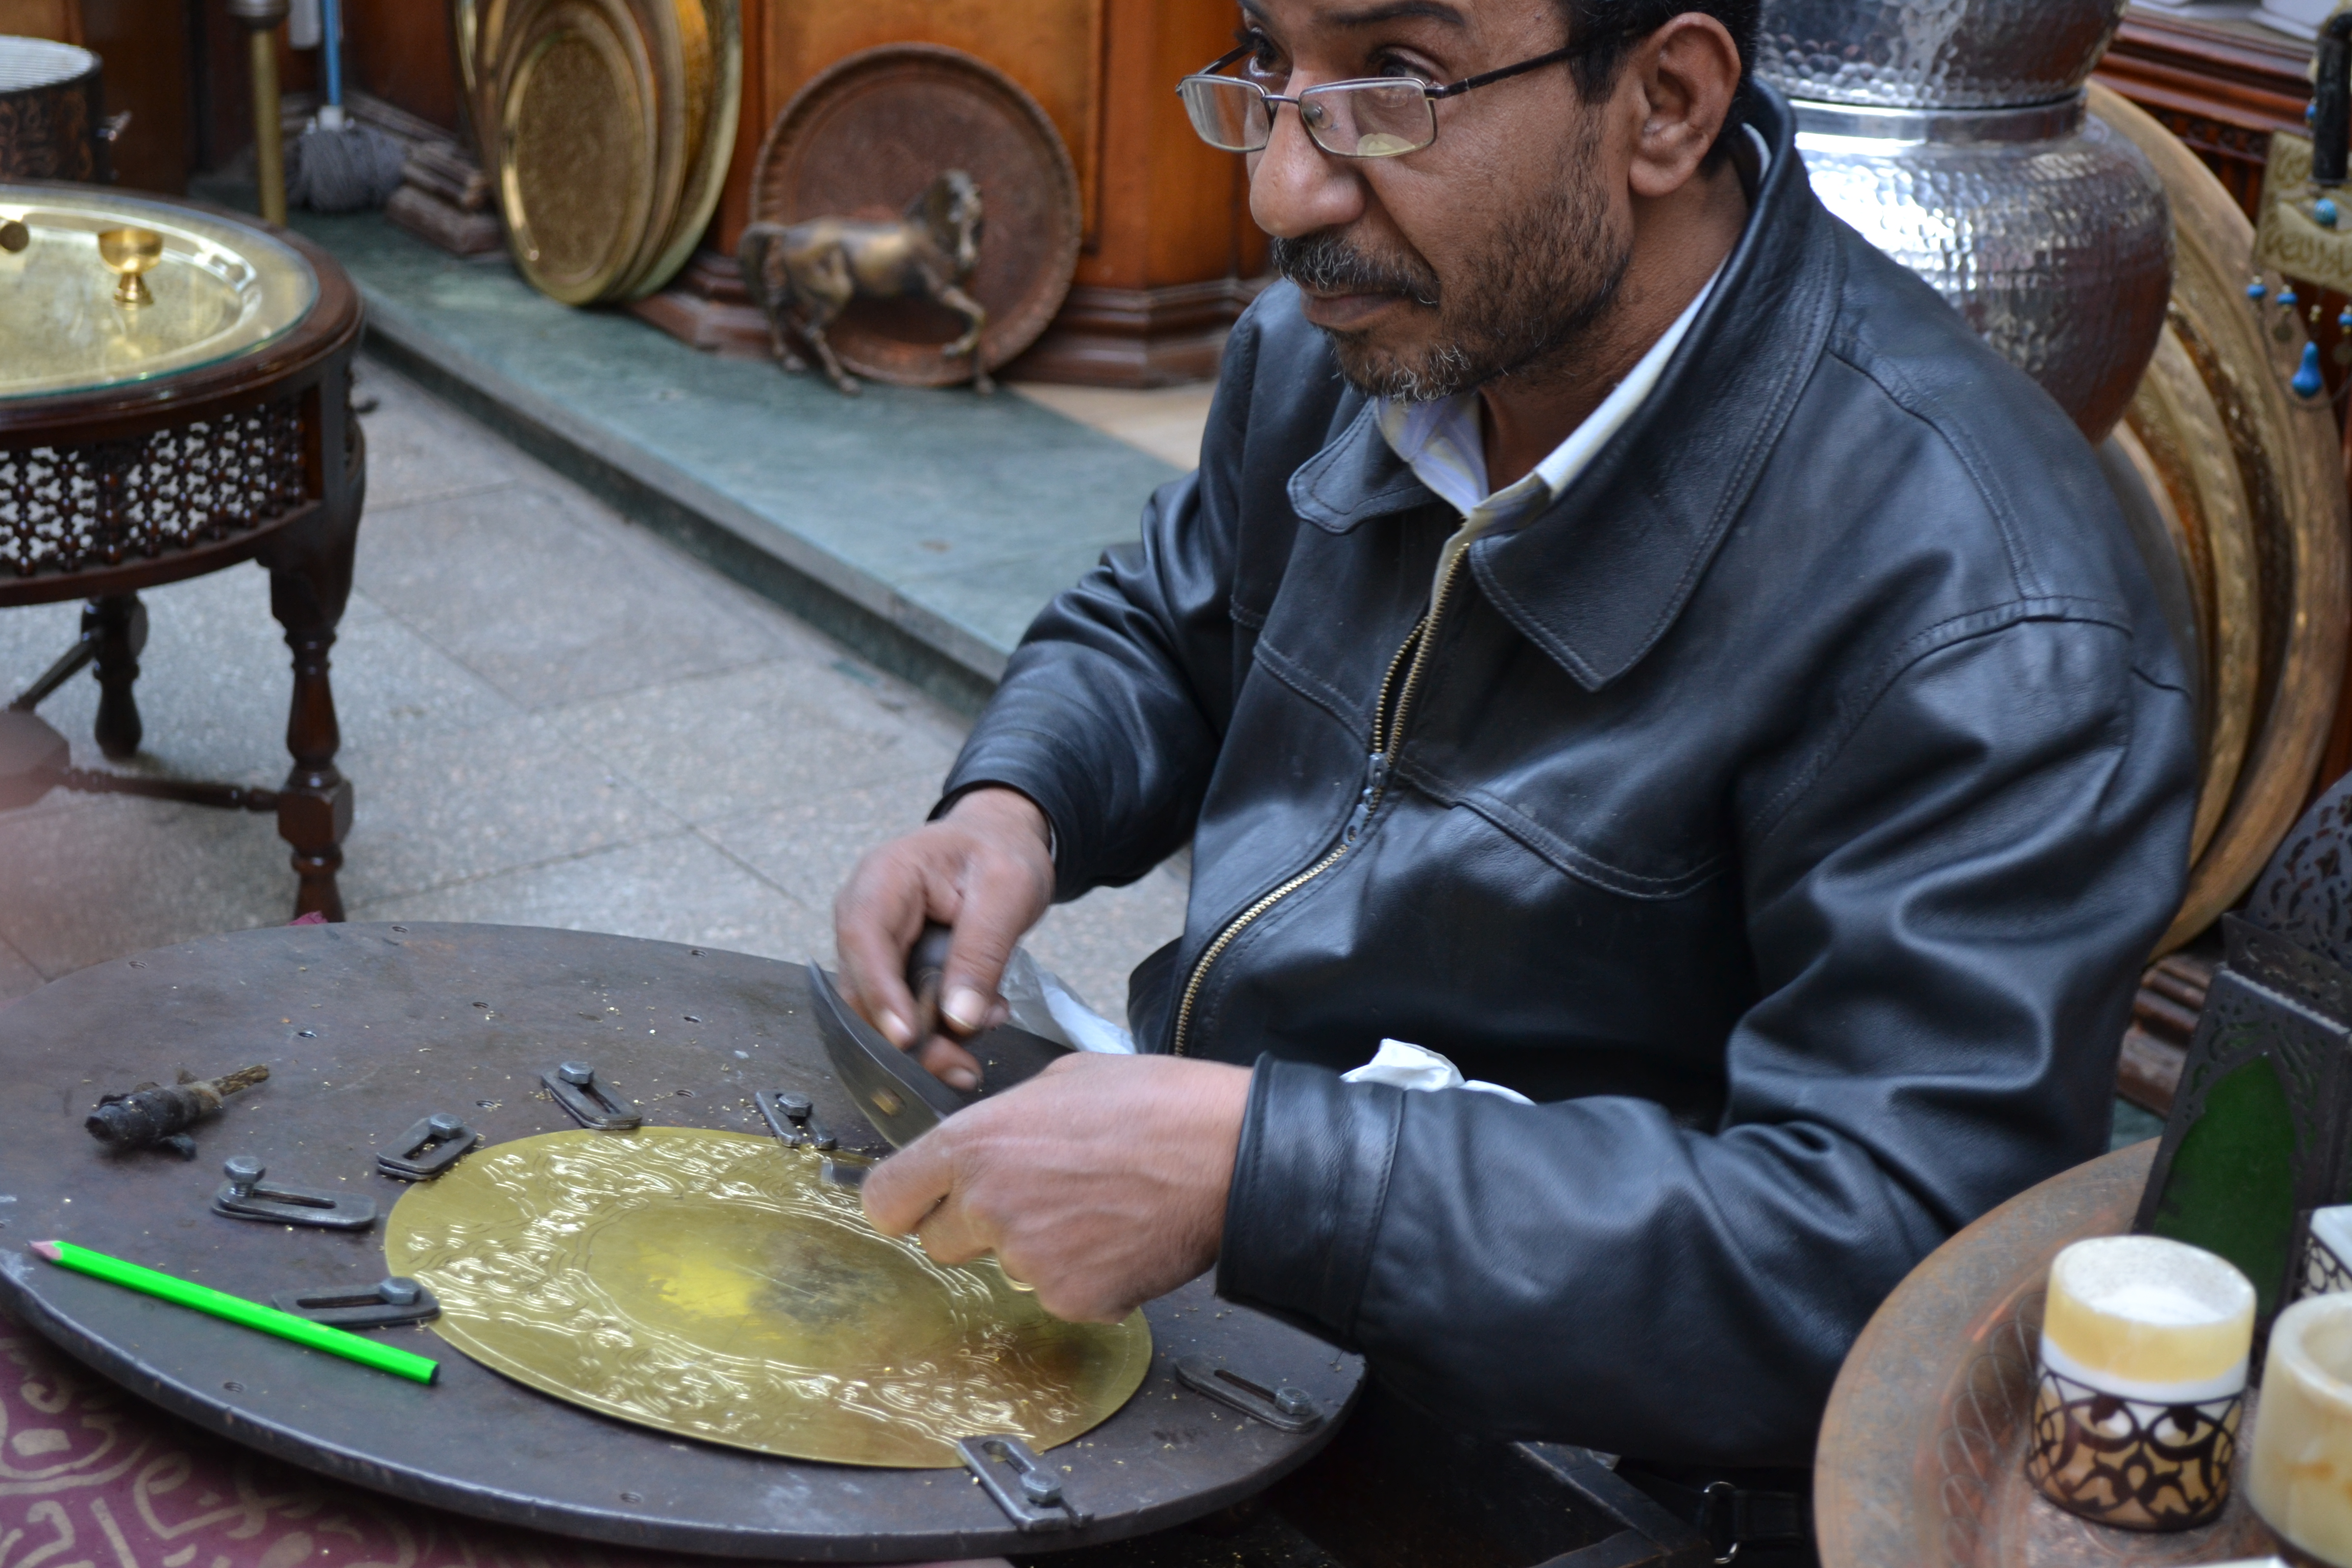 Egyptian hand-crafting items at Khan El-Khalili